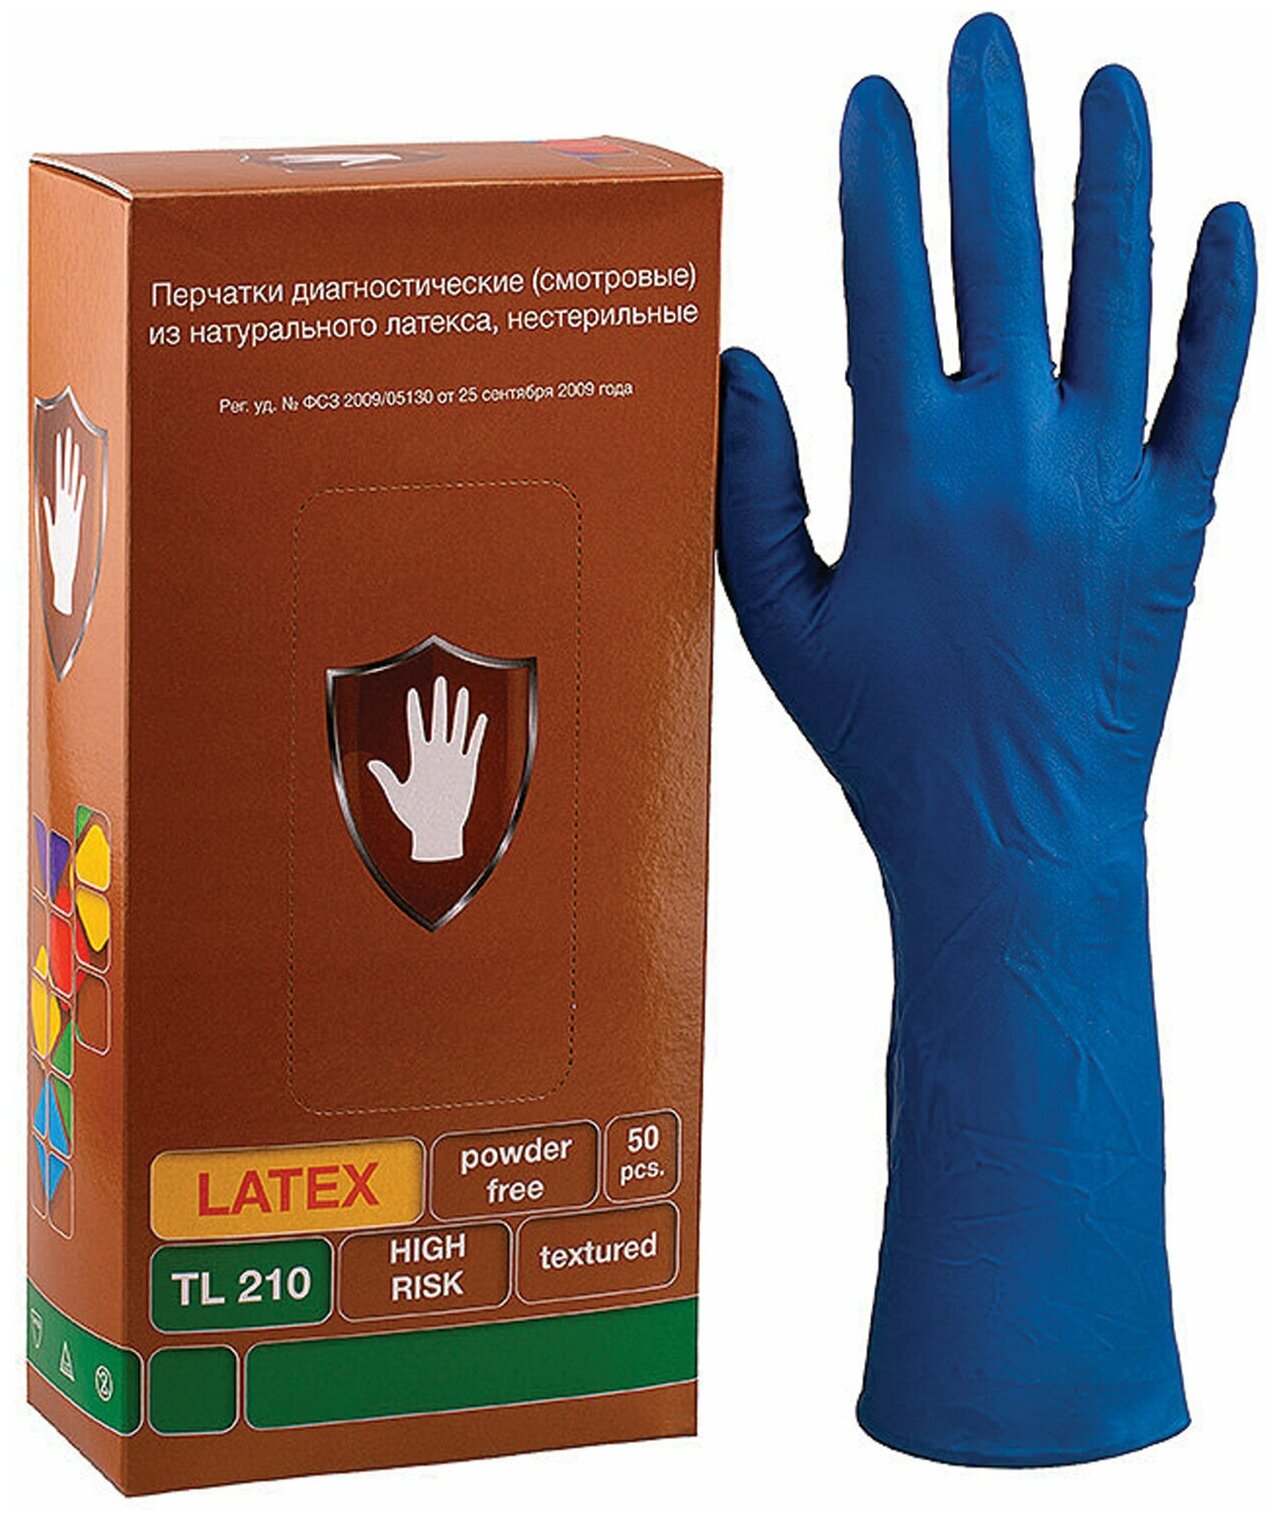 Перчатки диагностические смотровые из натурального латекса нестерильные разм. M 50 шт. Top Glove Sdn Bhd - фото №2